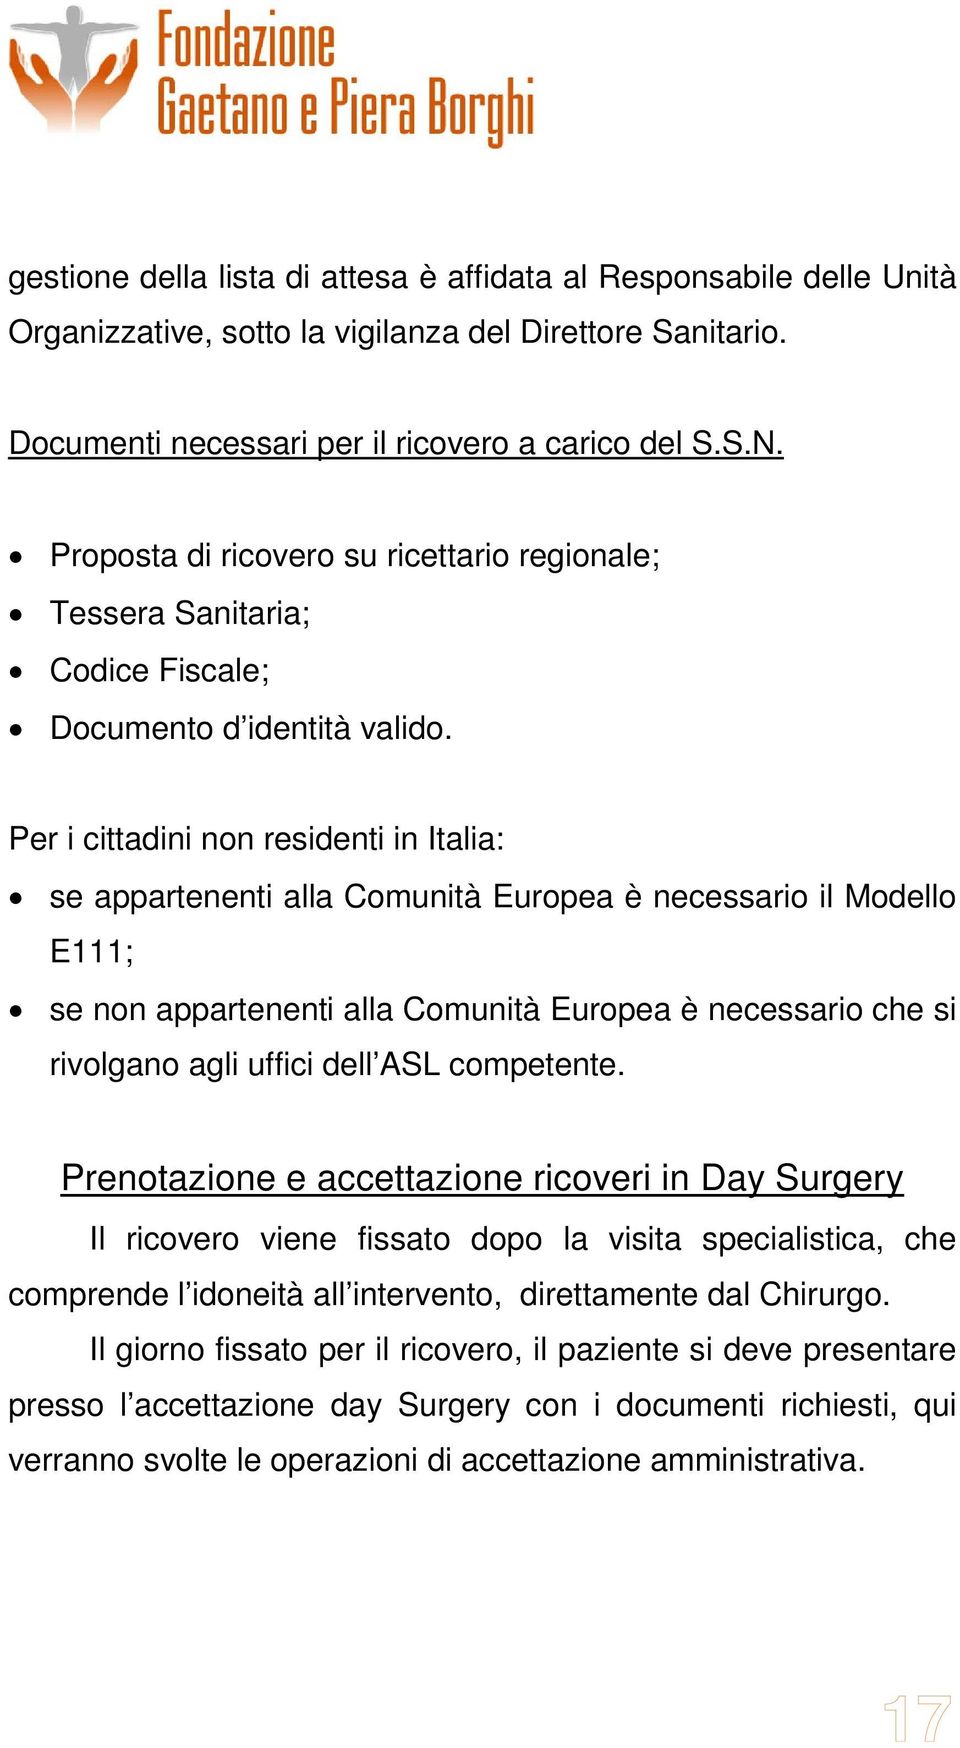 Per i cittadini non residenti in Italia: se appartenenti alla Comunità Europea è necessario il Modello E111; se non appartenenti alla Comunità Europea è necessario che si rivolgano agli uffici dell